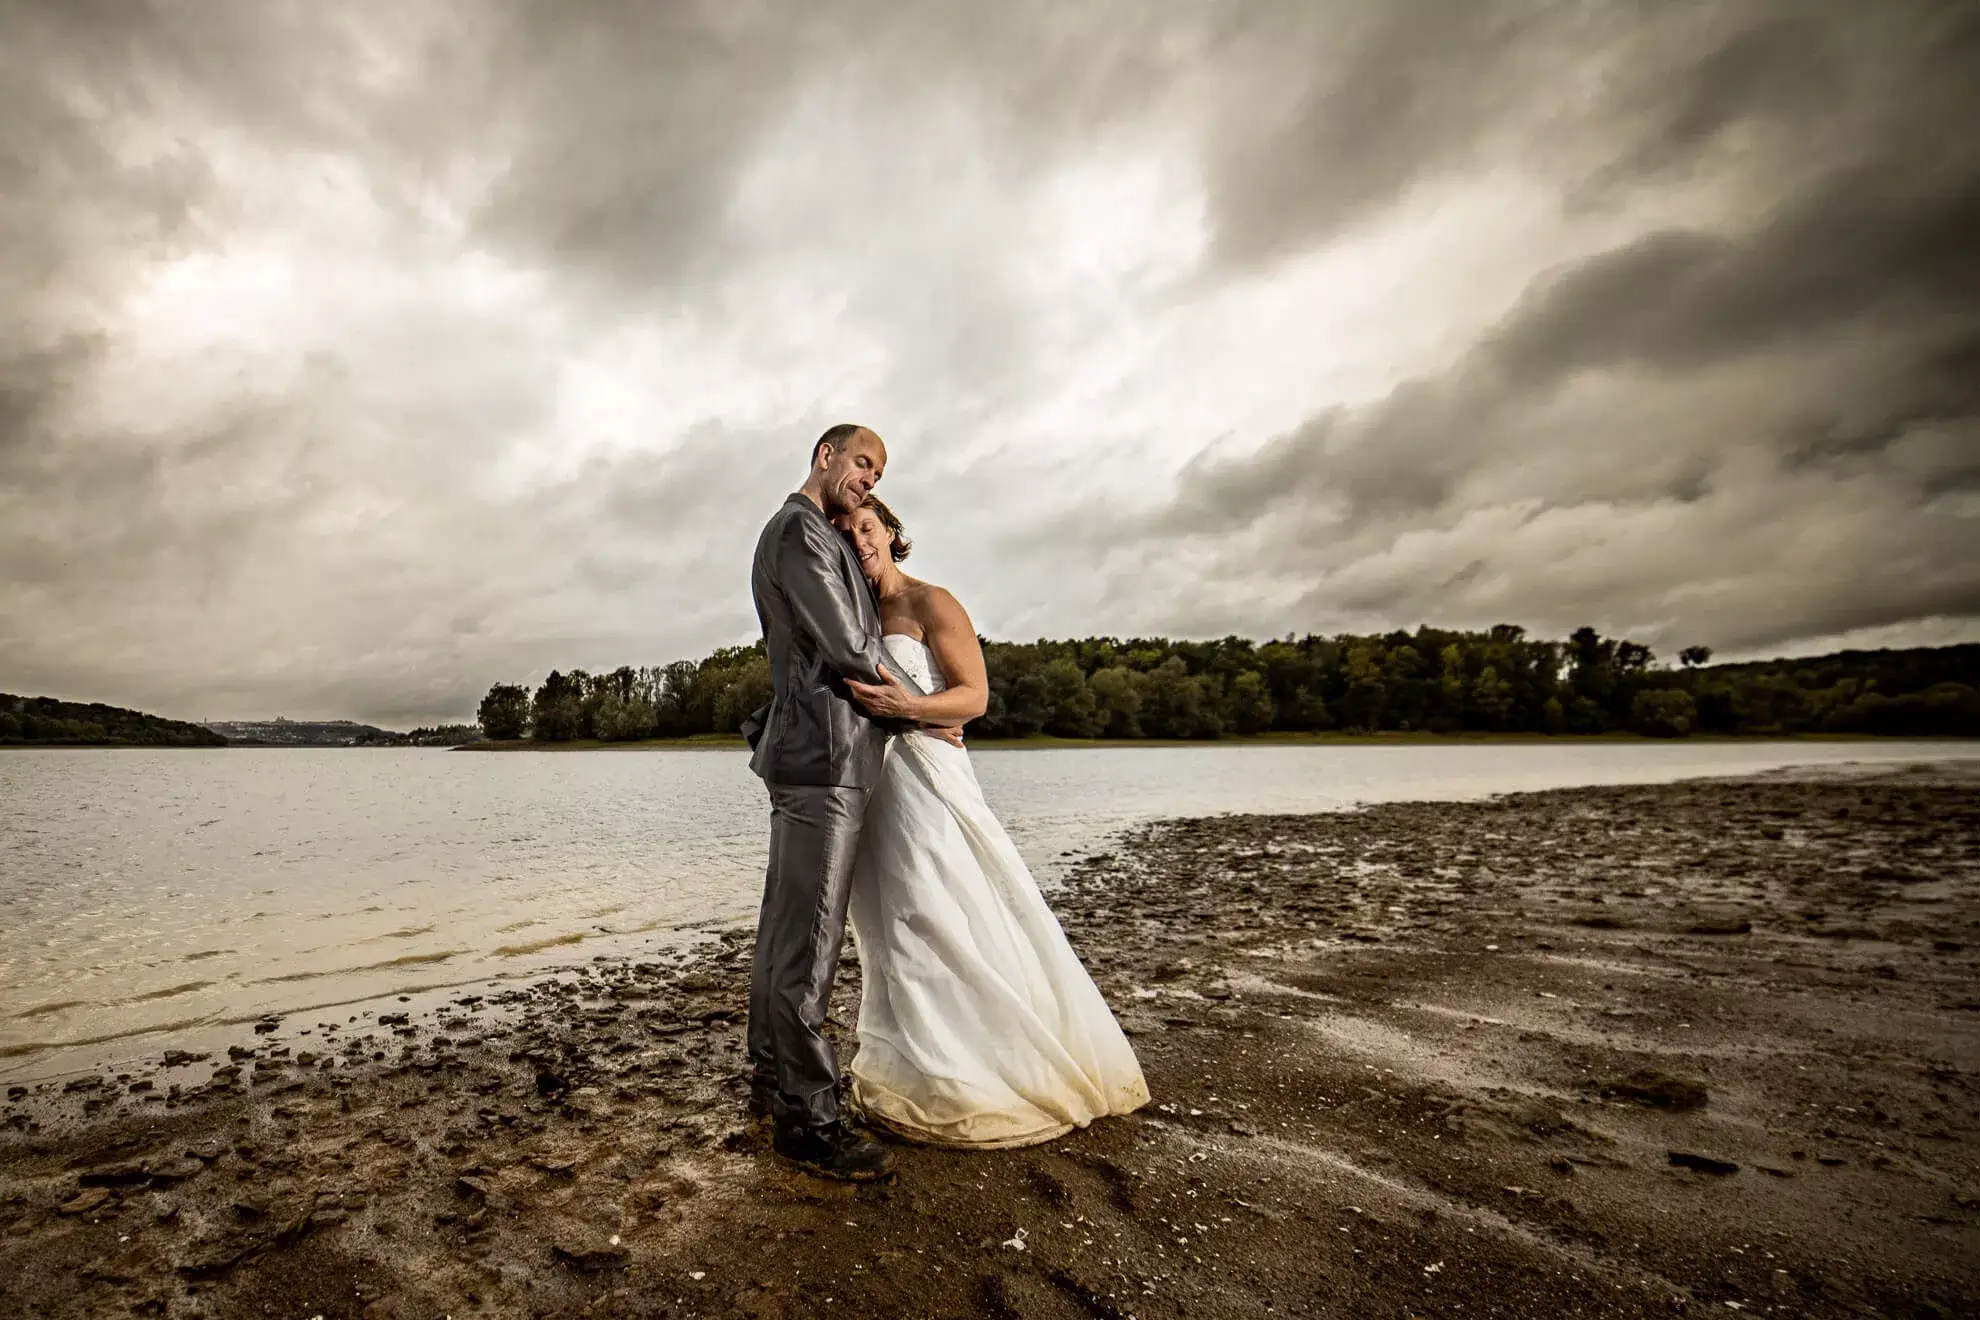 Une photo de couple près d'un lac sous la pluie.Une photo de couple près d'un lac sous la pluie.